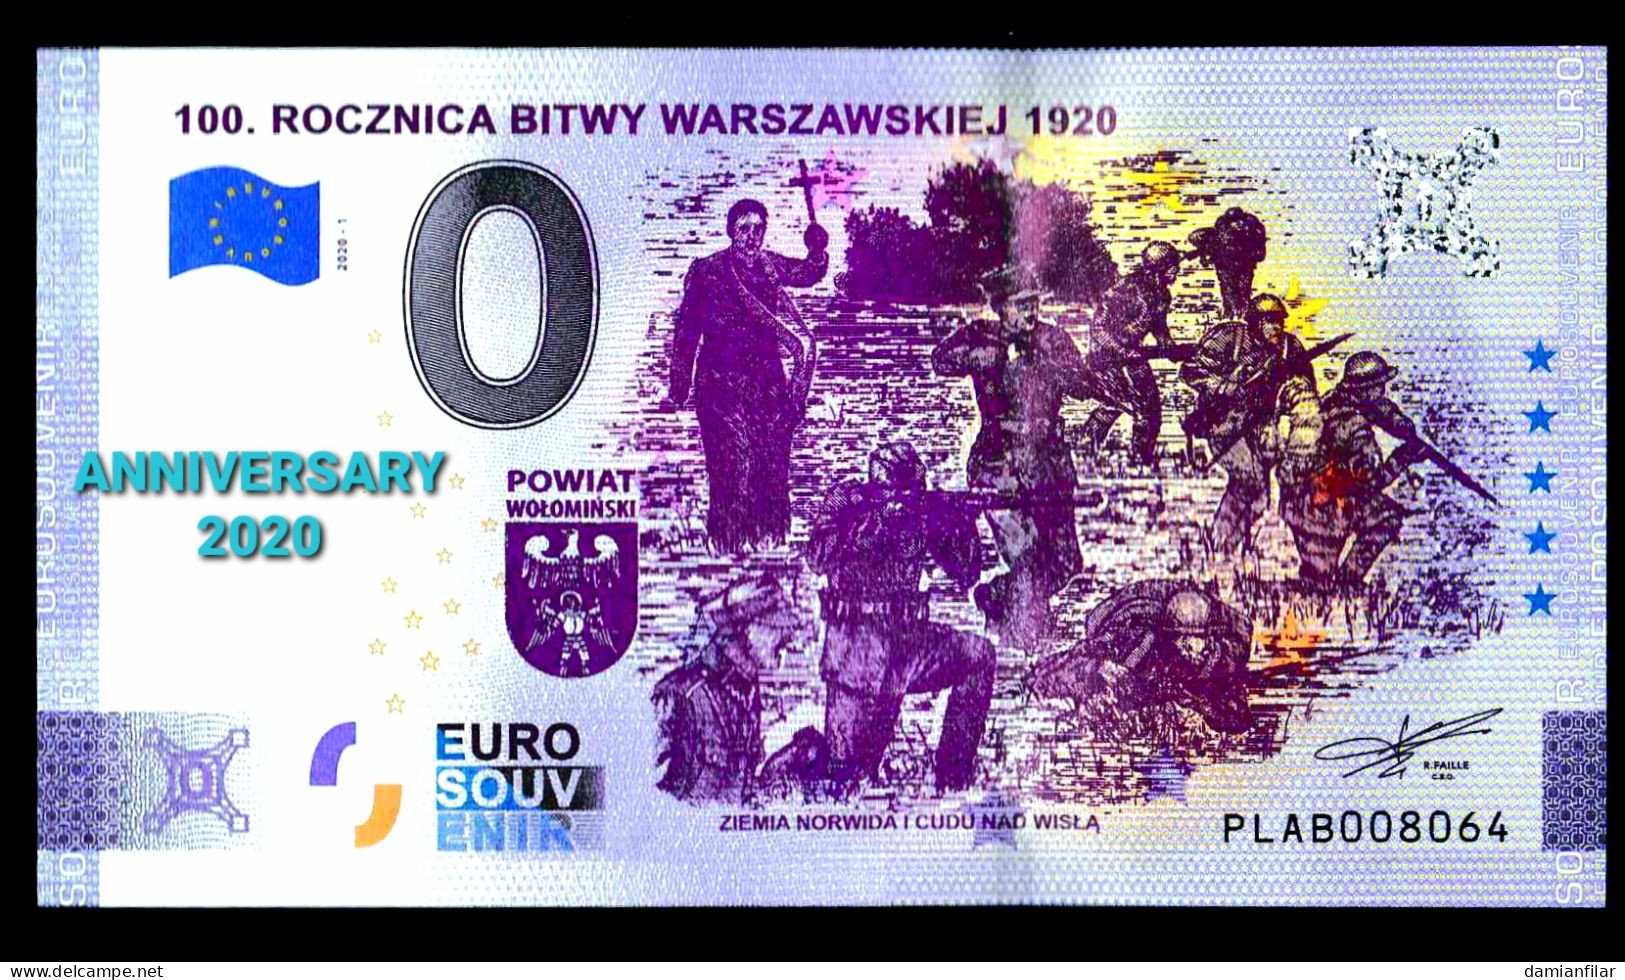 0 euro Souvenir Rocznica bitwy warszawskiej  ANNIVERSARY Poland PLAB 	2020-1